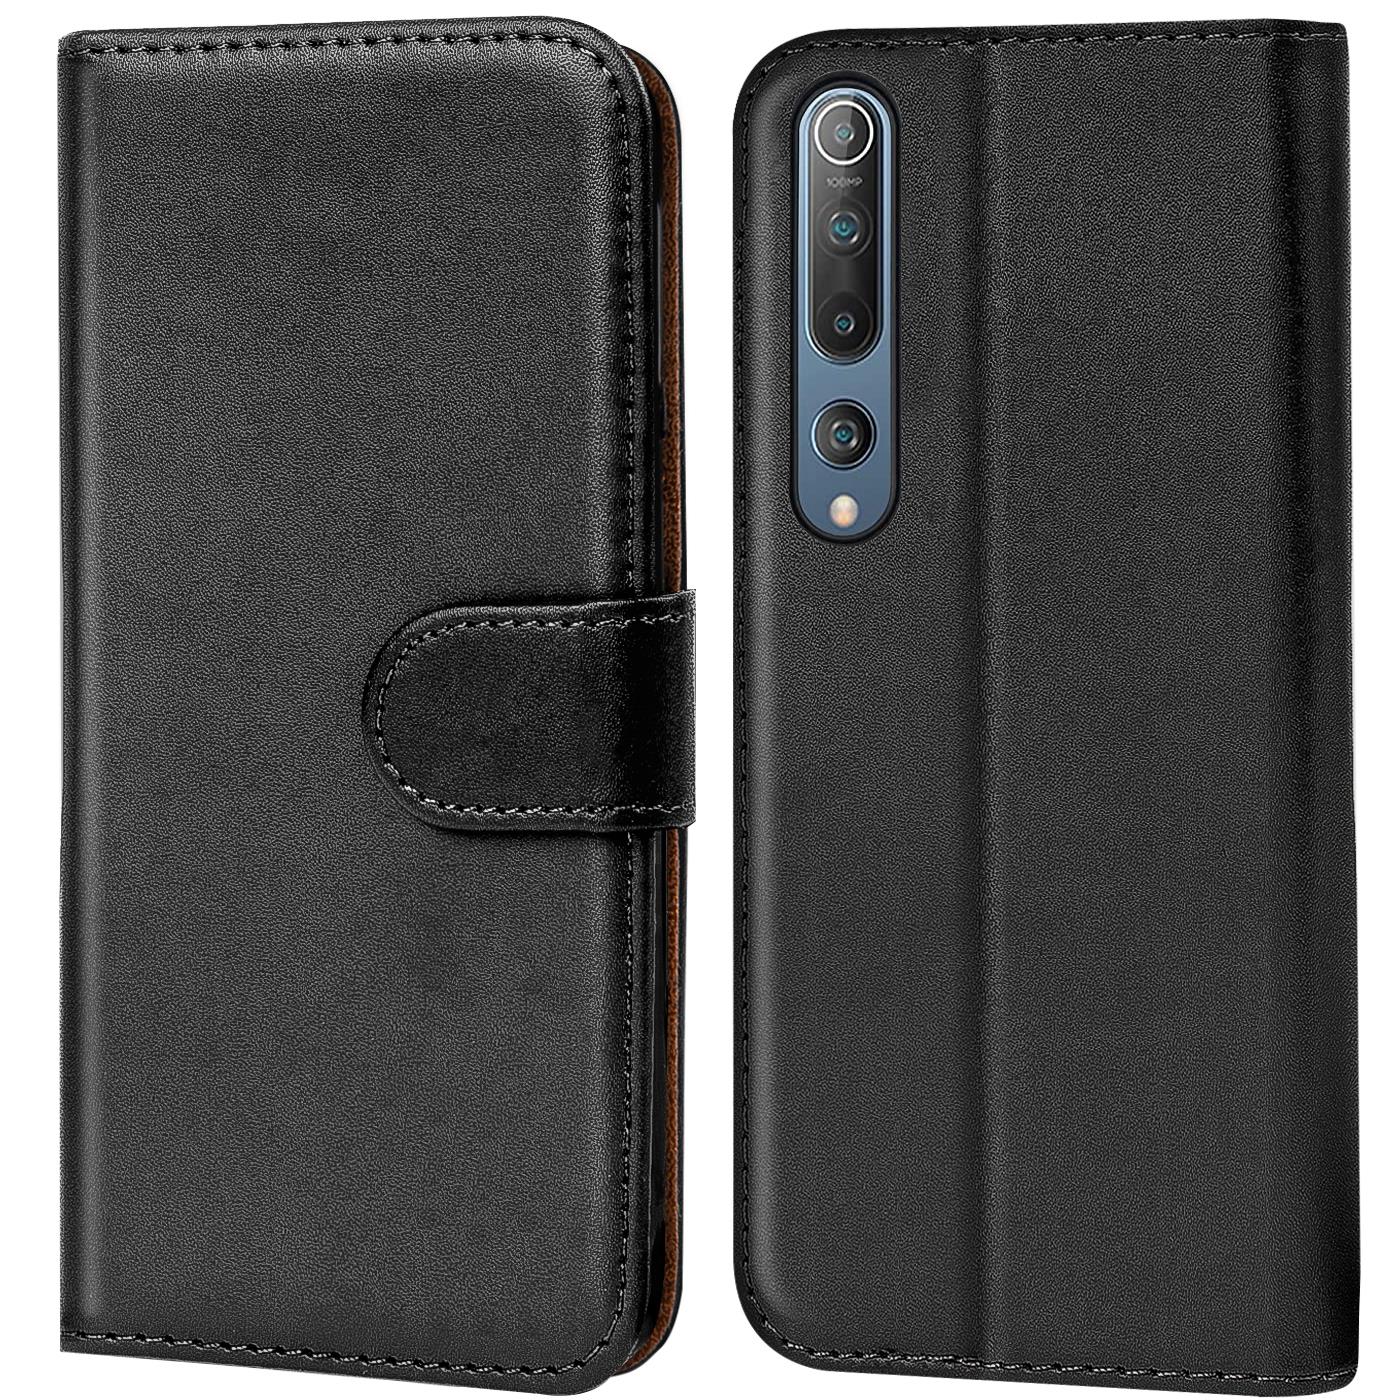 Indexbild 8 - Schutz Hülle Für Xiaomi Mi Handy Tasche Flip Case Cover Wallet Book Hülle Etui